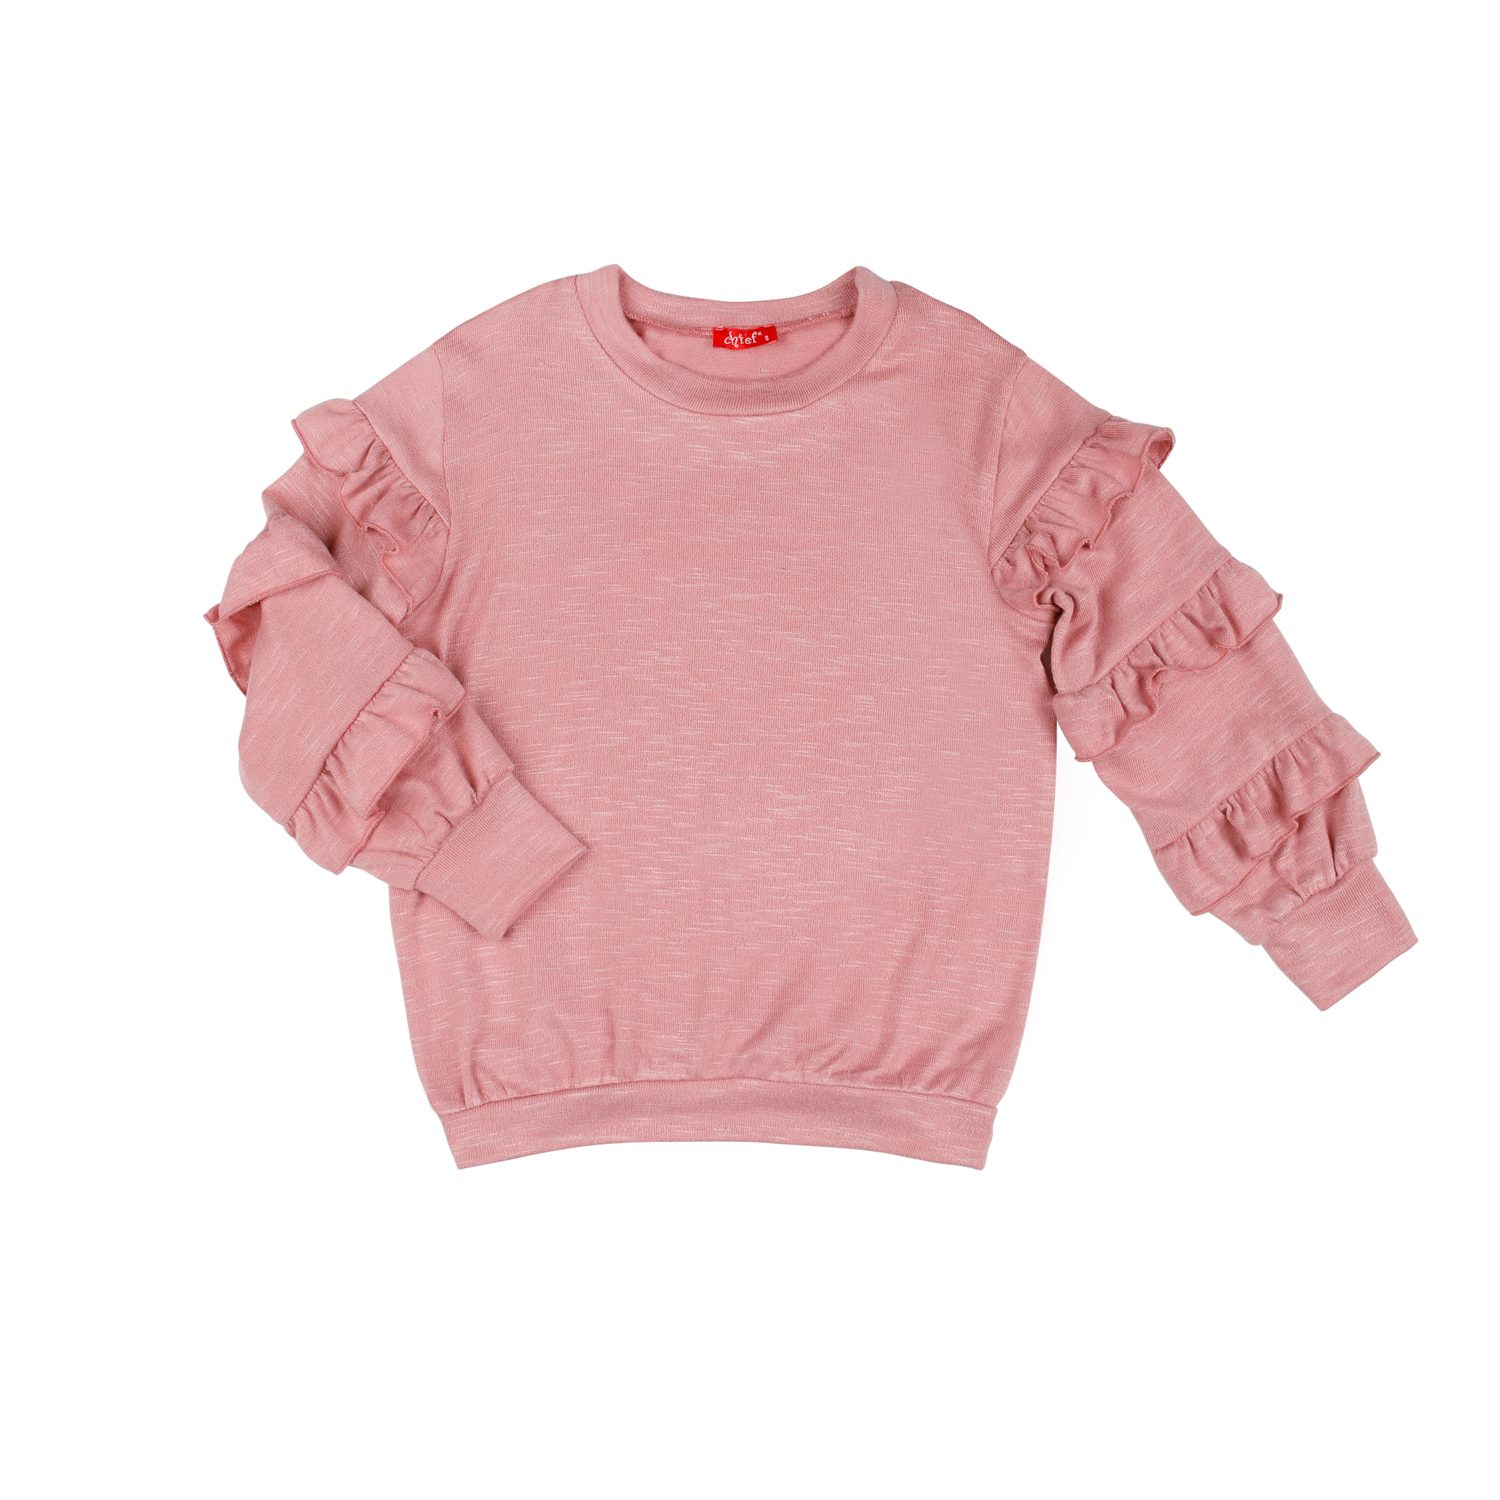 Παιδικό χειμερινό μπλουζοφόρεμα πλεκτό ροζ με βολάν στα μανίκια -12.3001R 14 65499